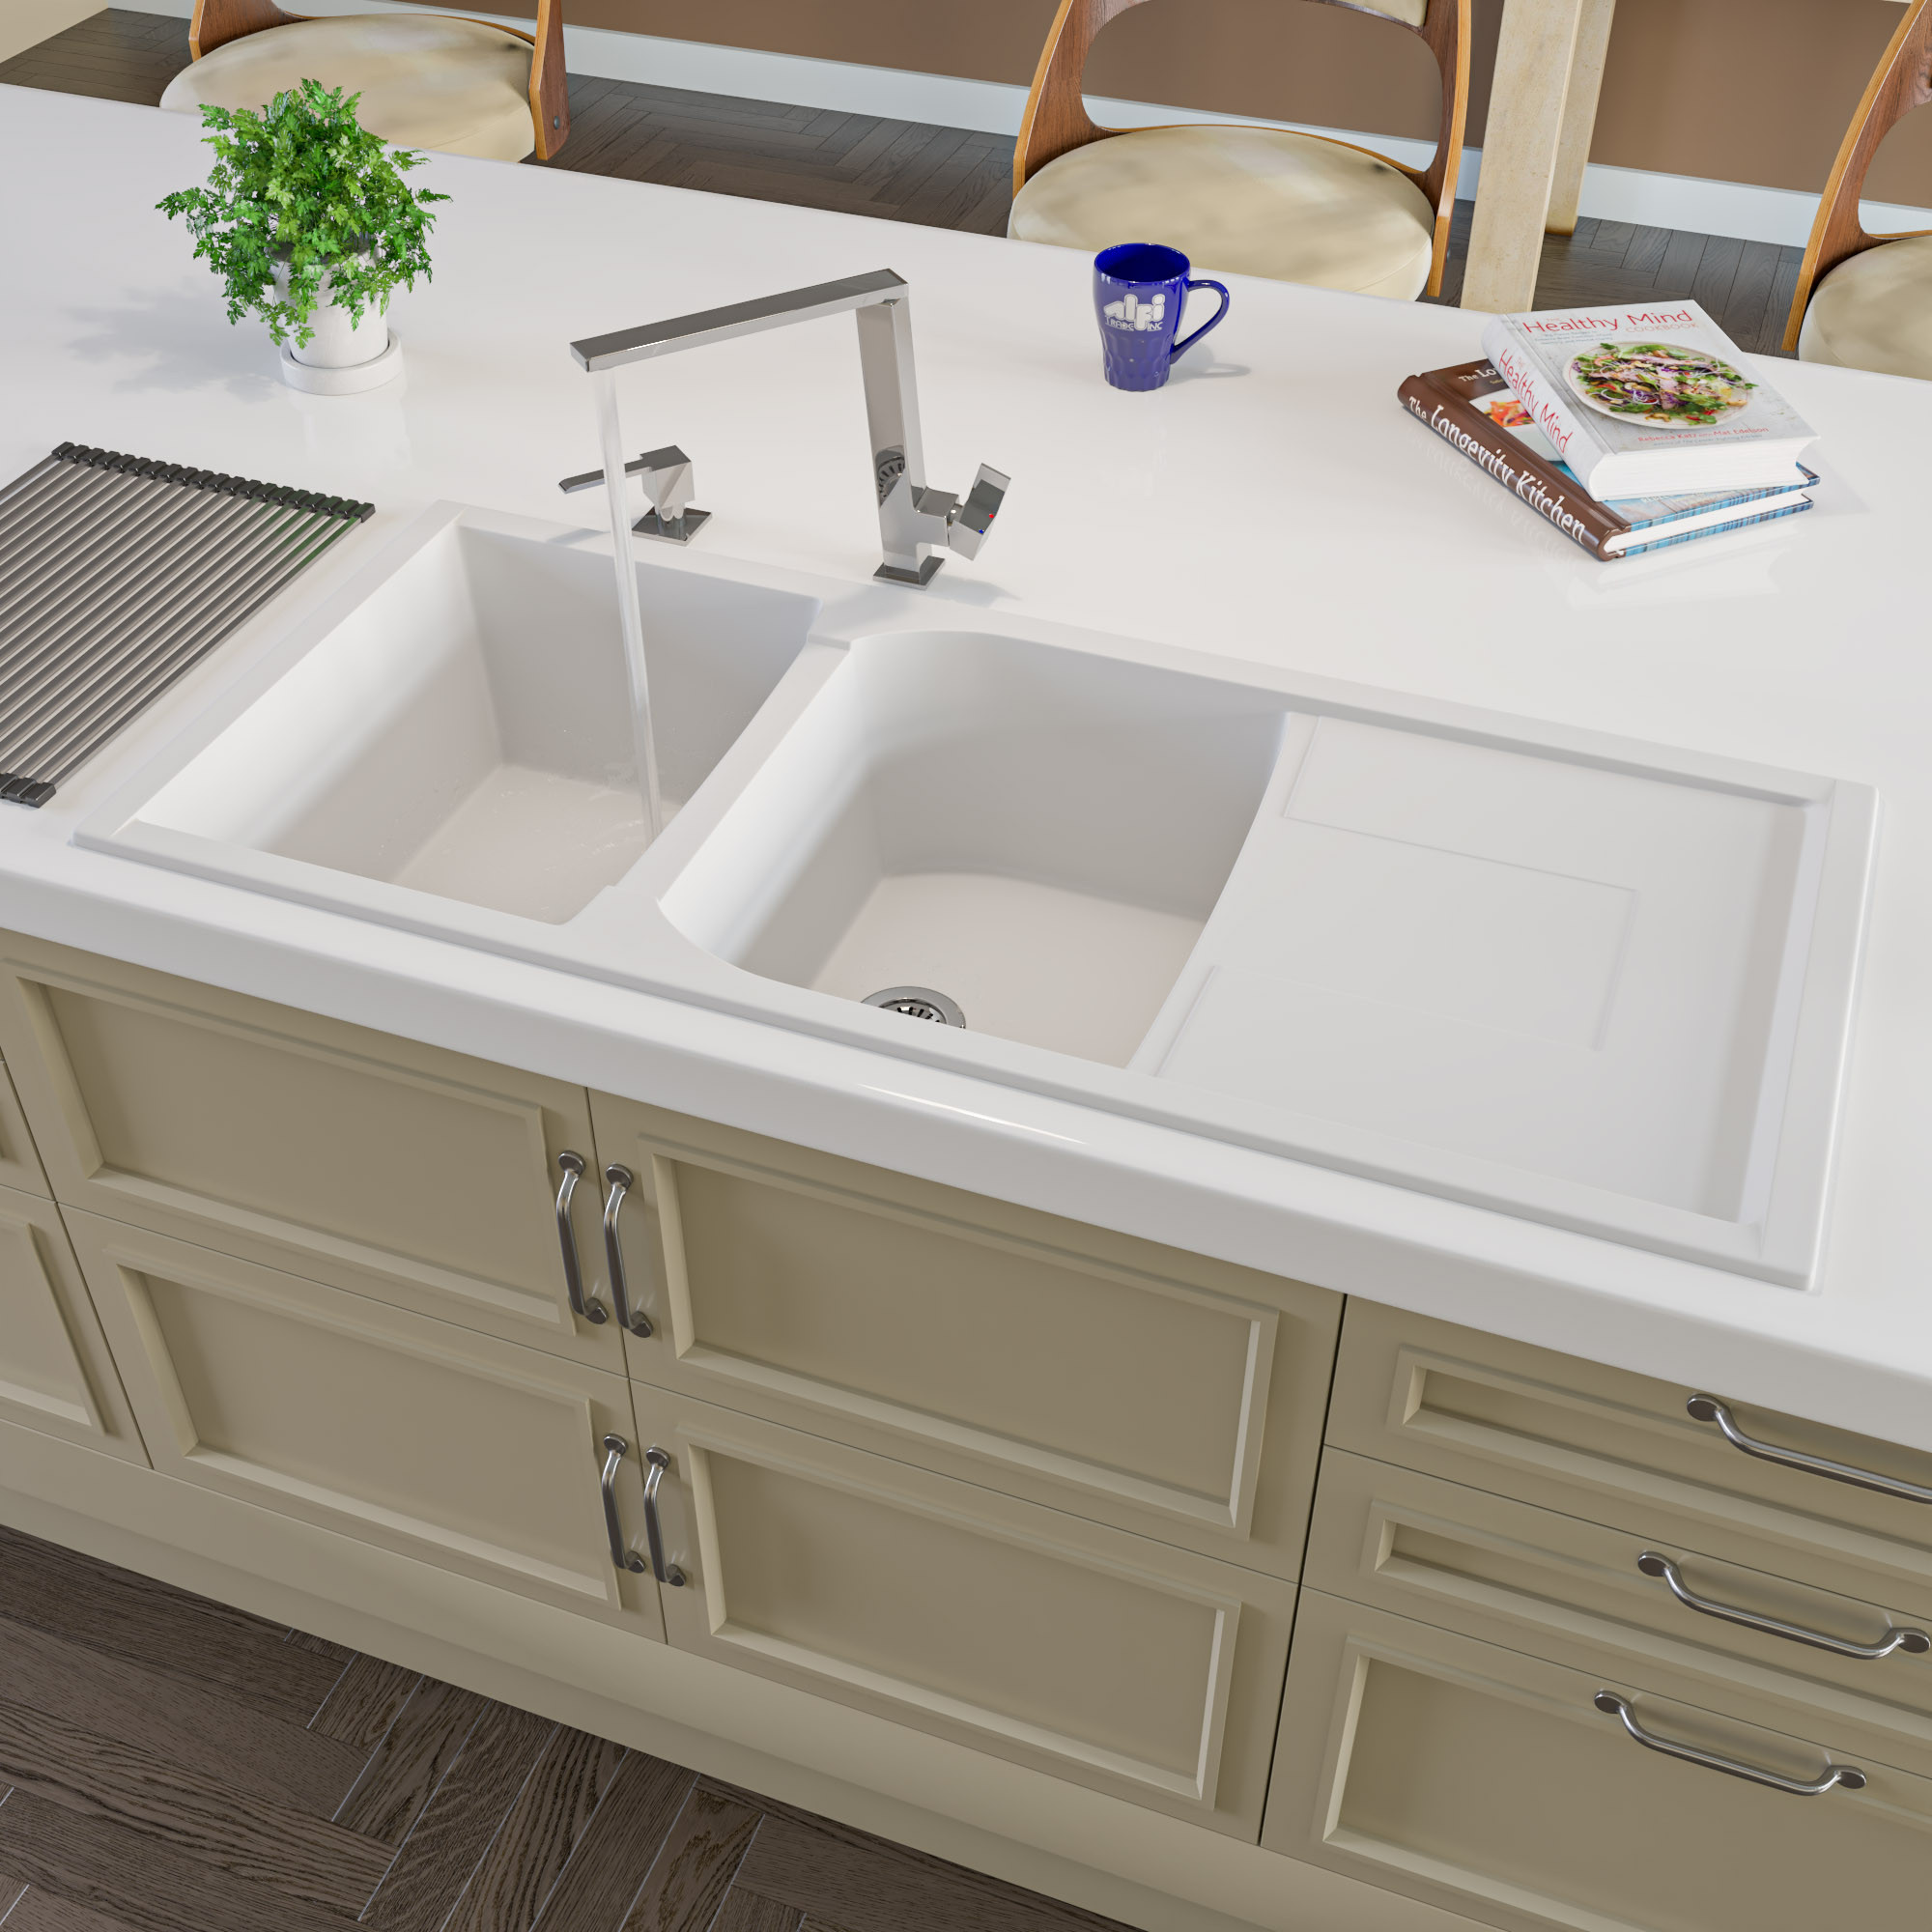 ALFI brand AB4620DI-W White Granite Composite Kitchen Sink with Drainboard